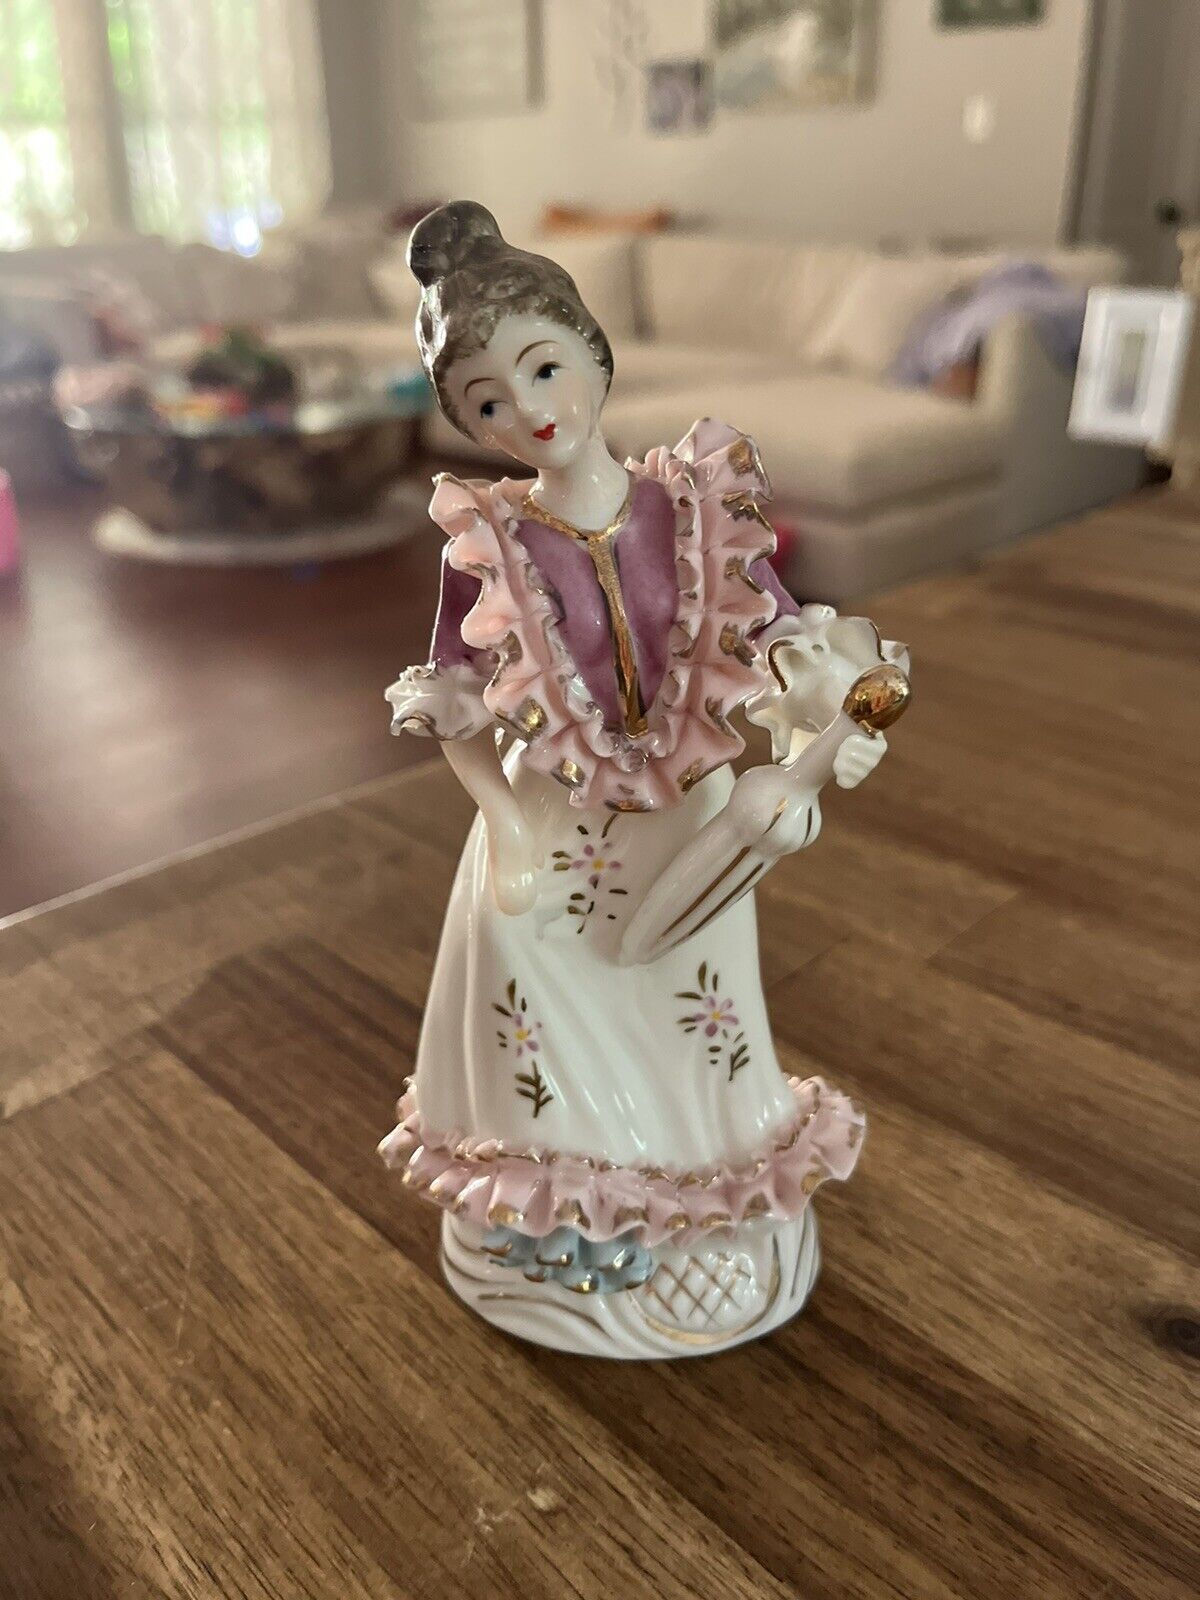 6” Vintage Japan Victorian Colonial Woman w Flowers Porcelain Figurine